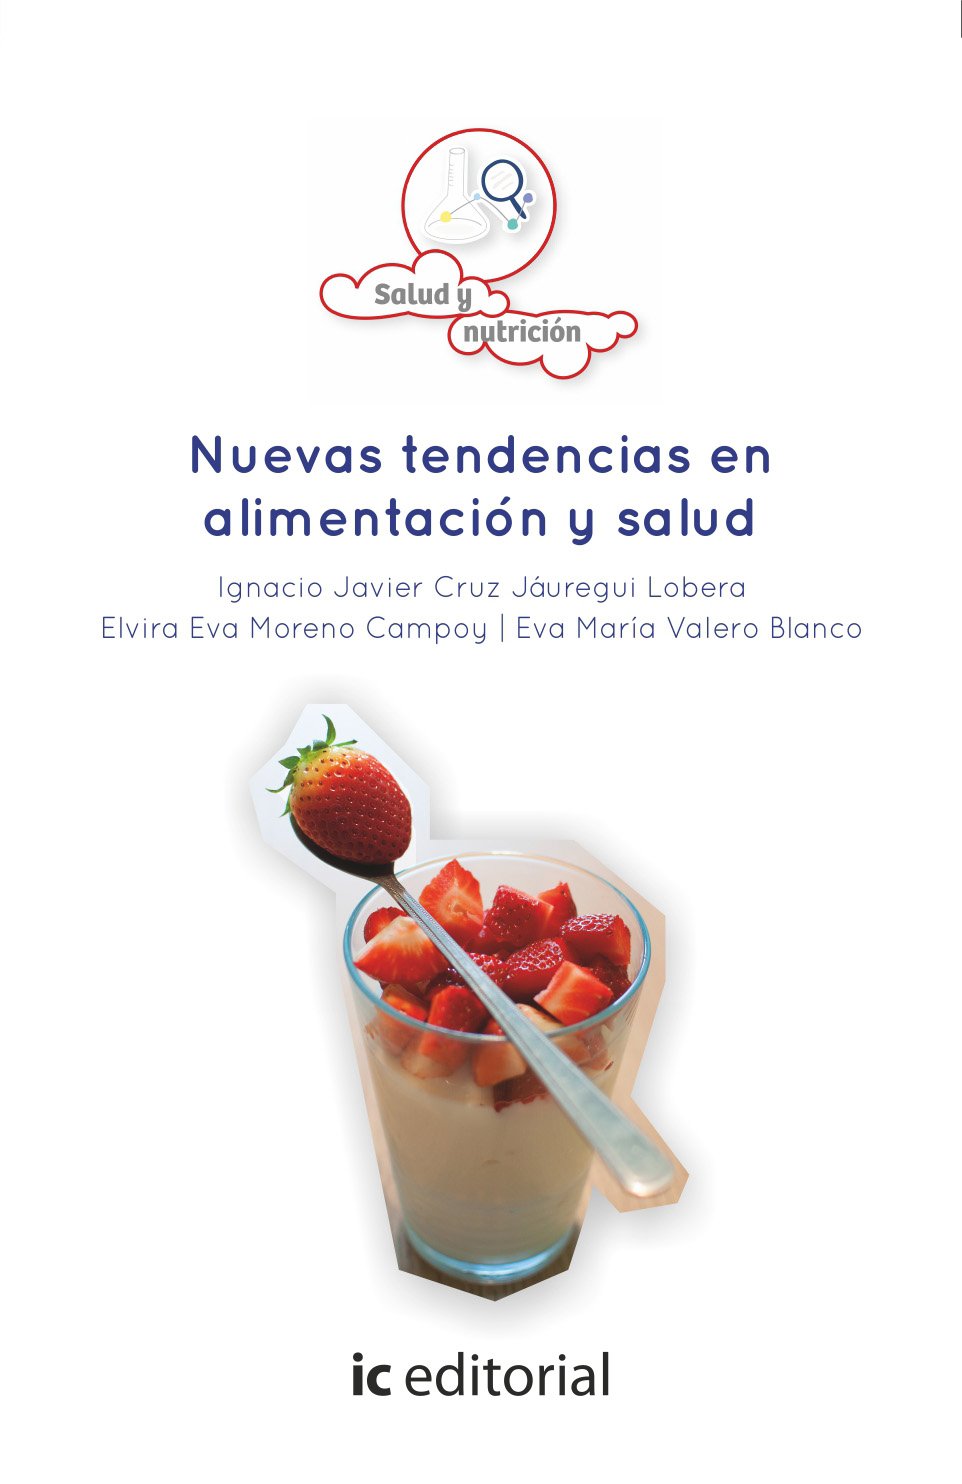 Imagen de portada del libro Nuevas tendencias en alimentacion y salud